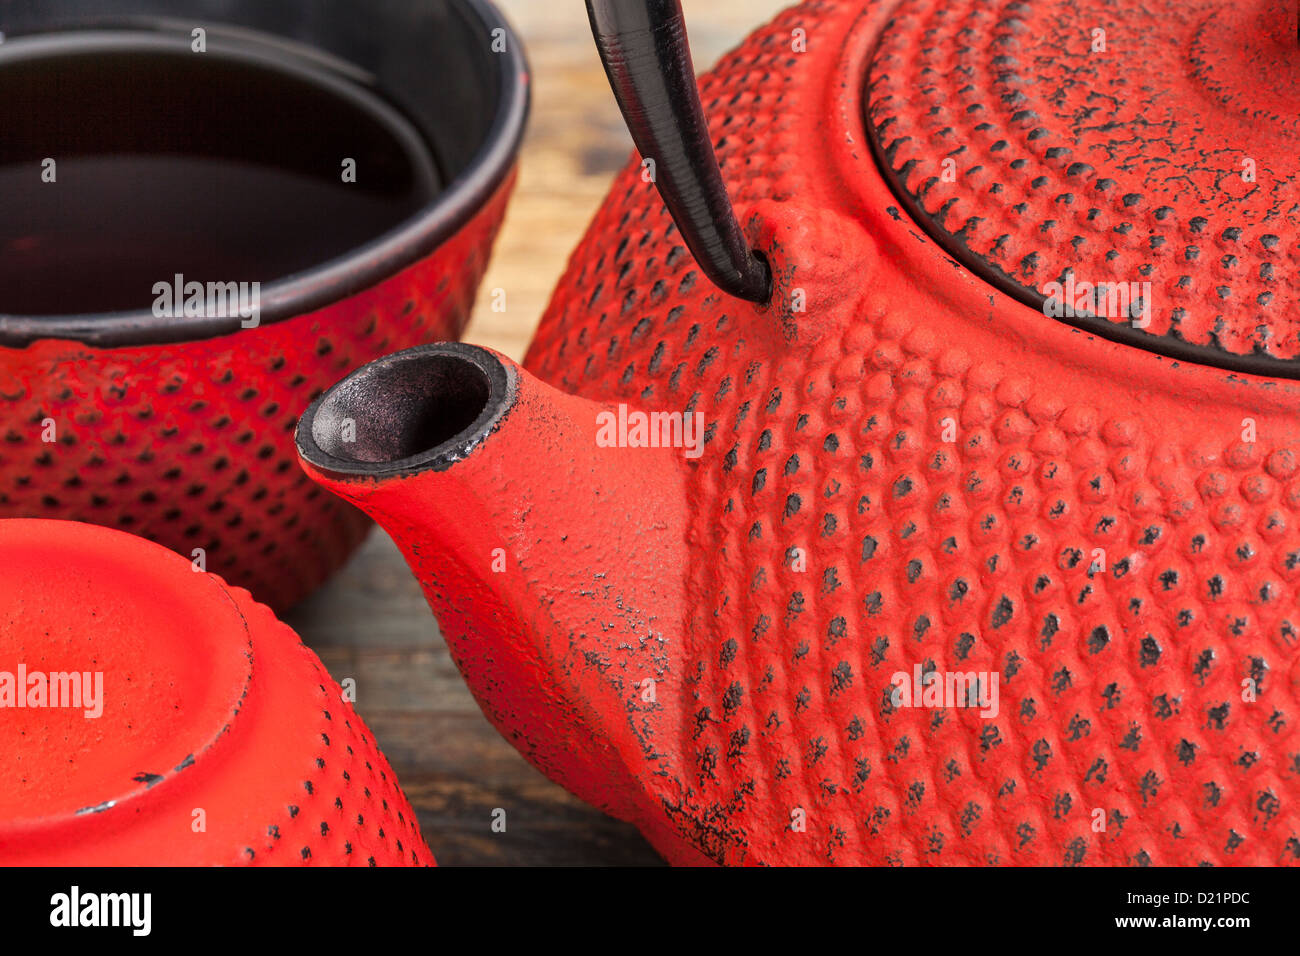 roten Tetsubin mit einer Tasse Tee - ein Detail einer traditionellen Gusseisen japanische Teekanne Stockfoto